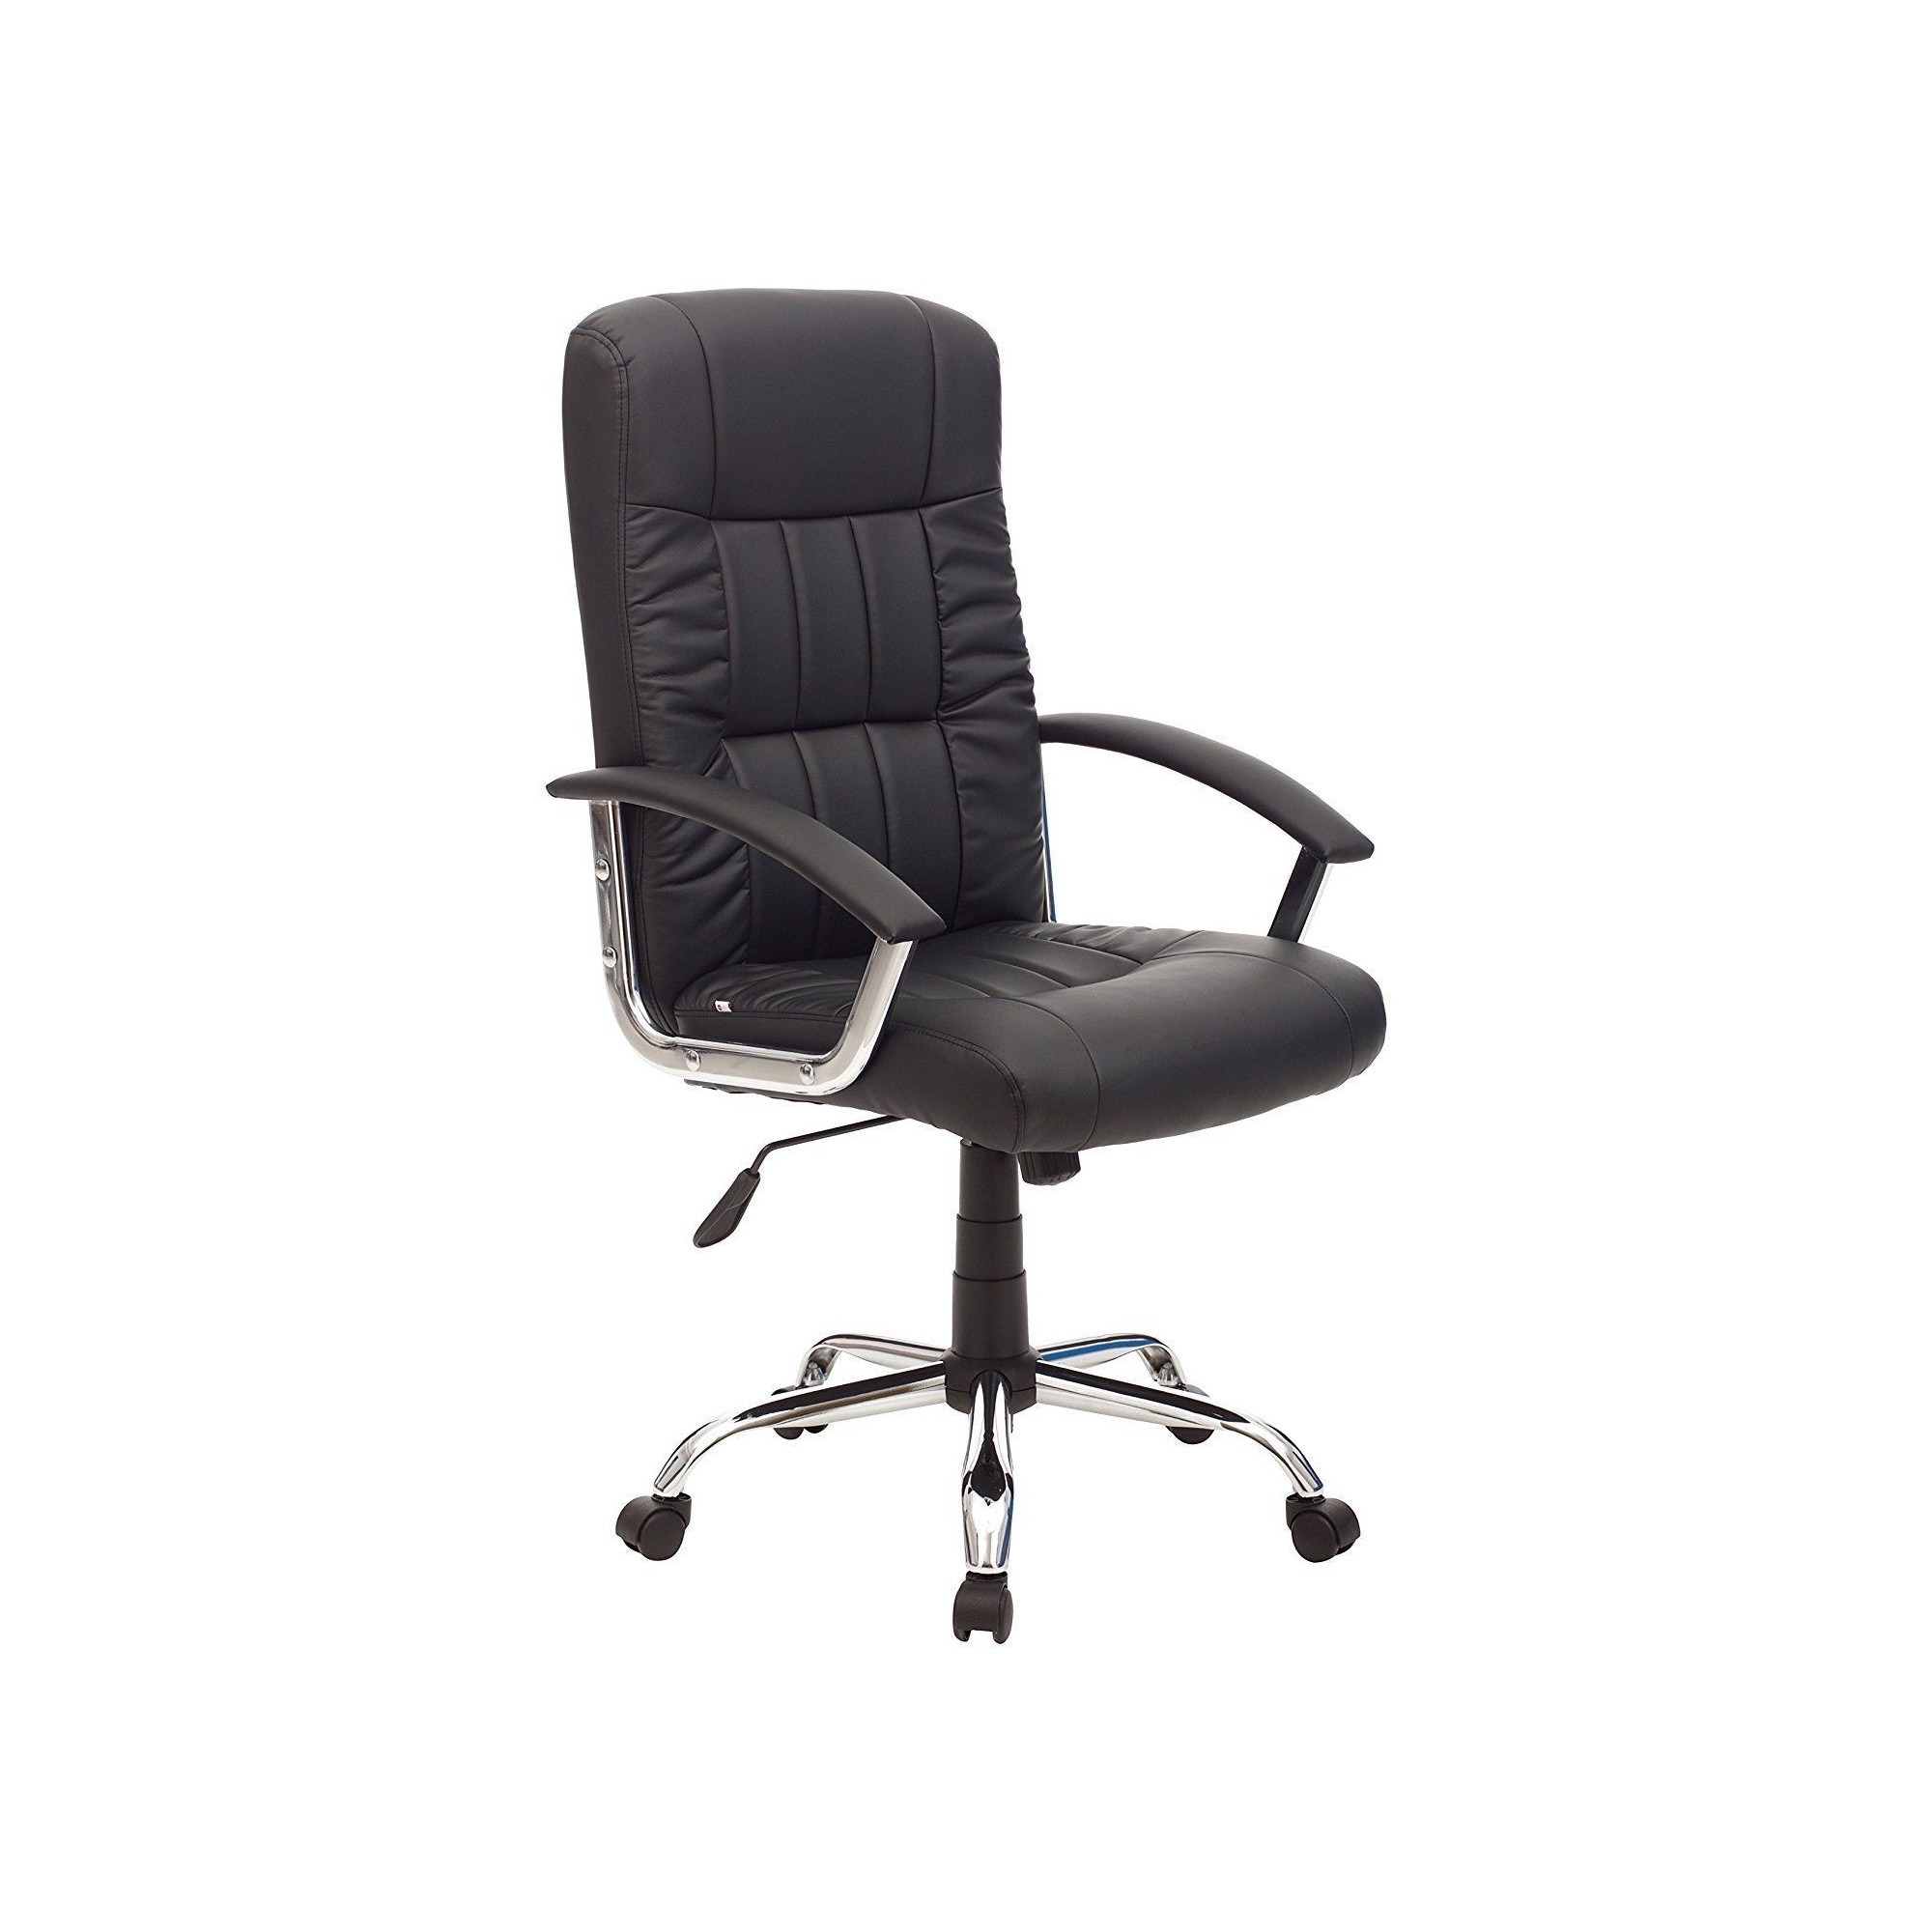 Base cromata ricmbio per sedia ufficio con ruote gommate- Uni-form Srl